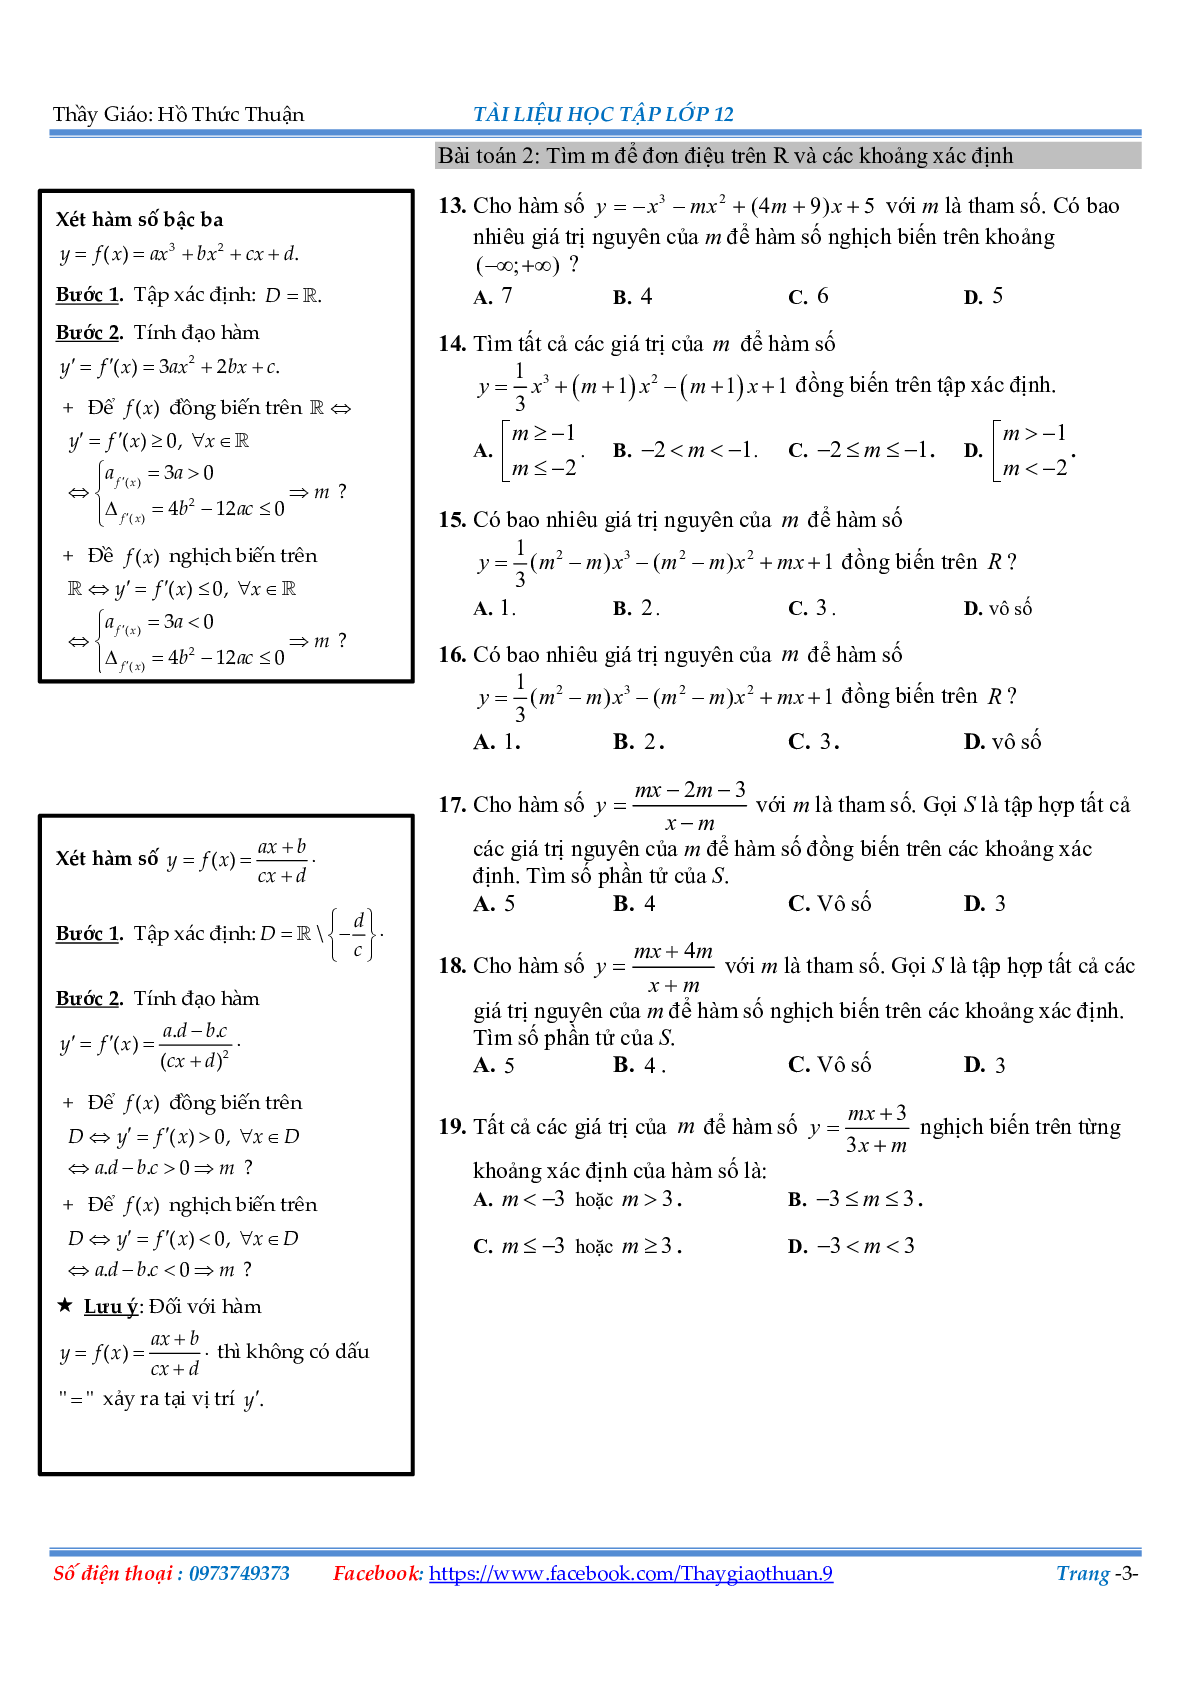 Bài tập về các cách giải đơn điệu Hàm số (trang 3)